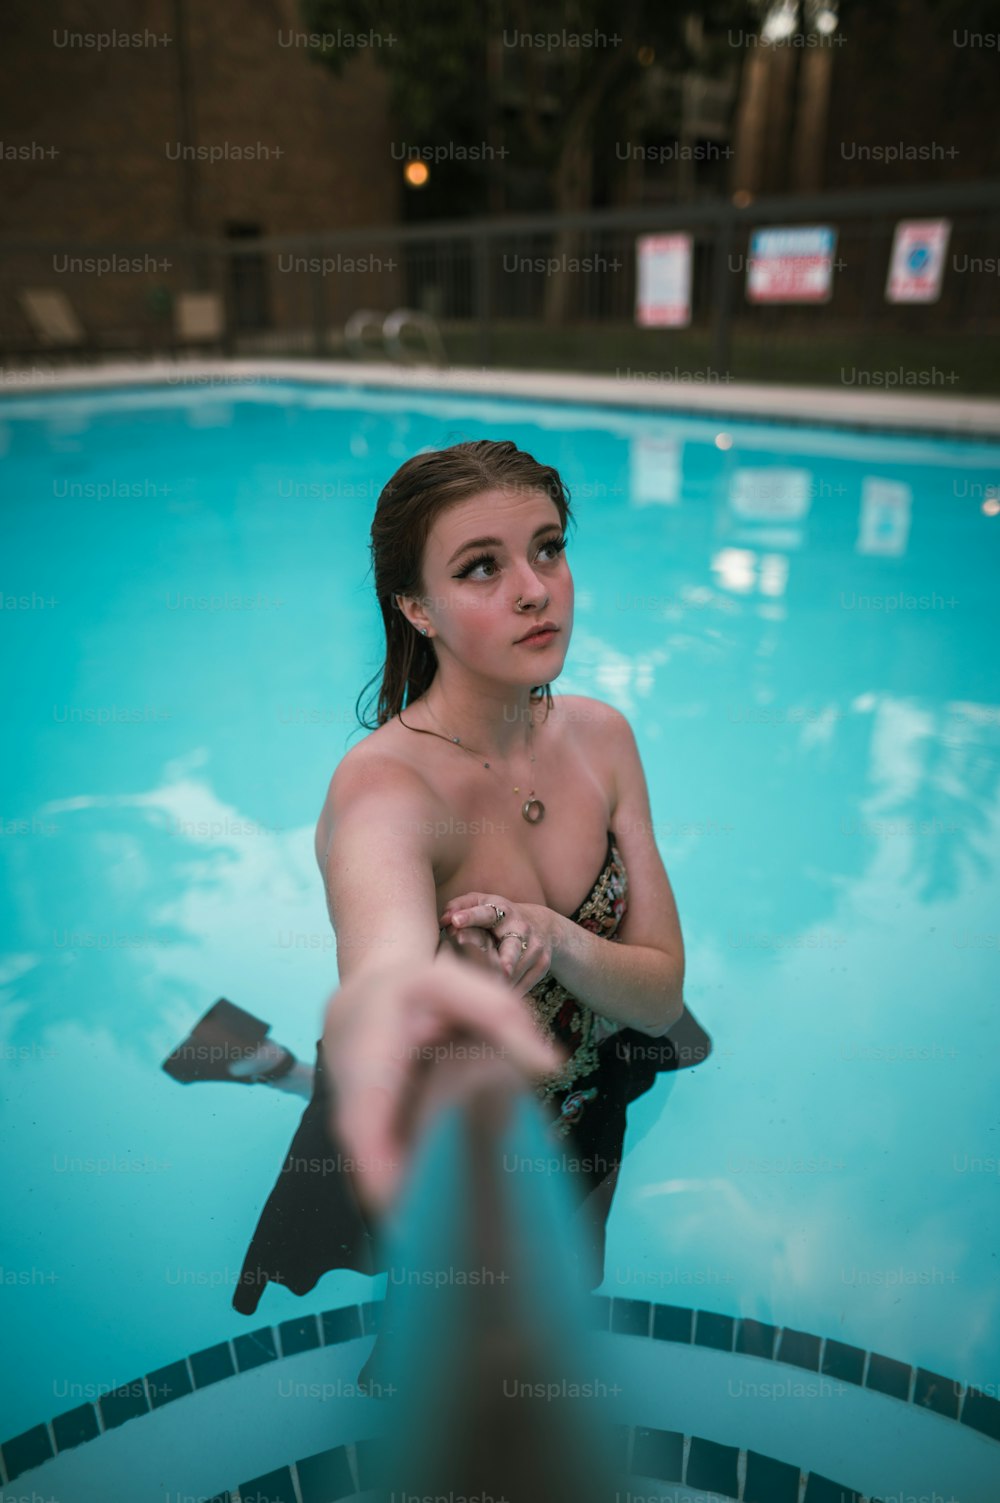 Una mujer en bikini parada en una piscina